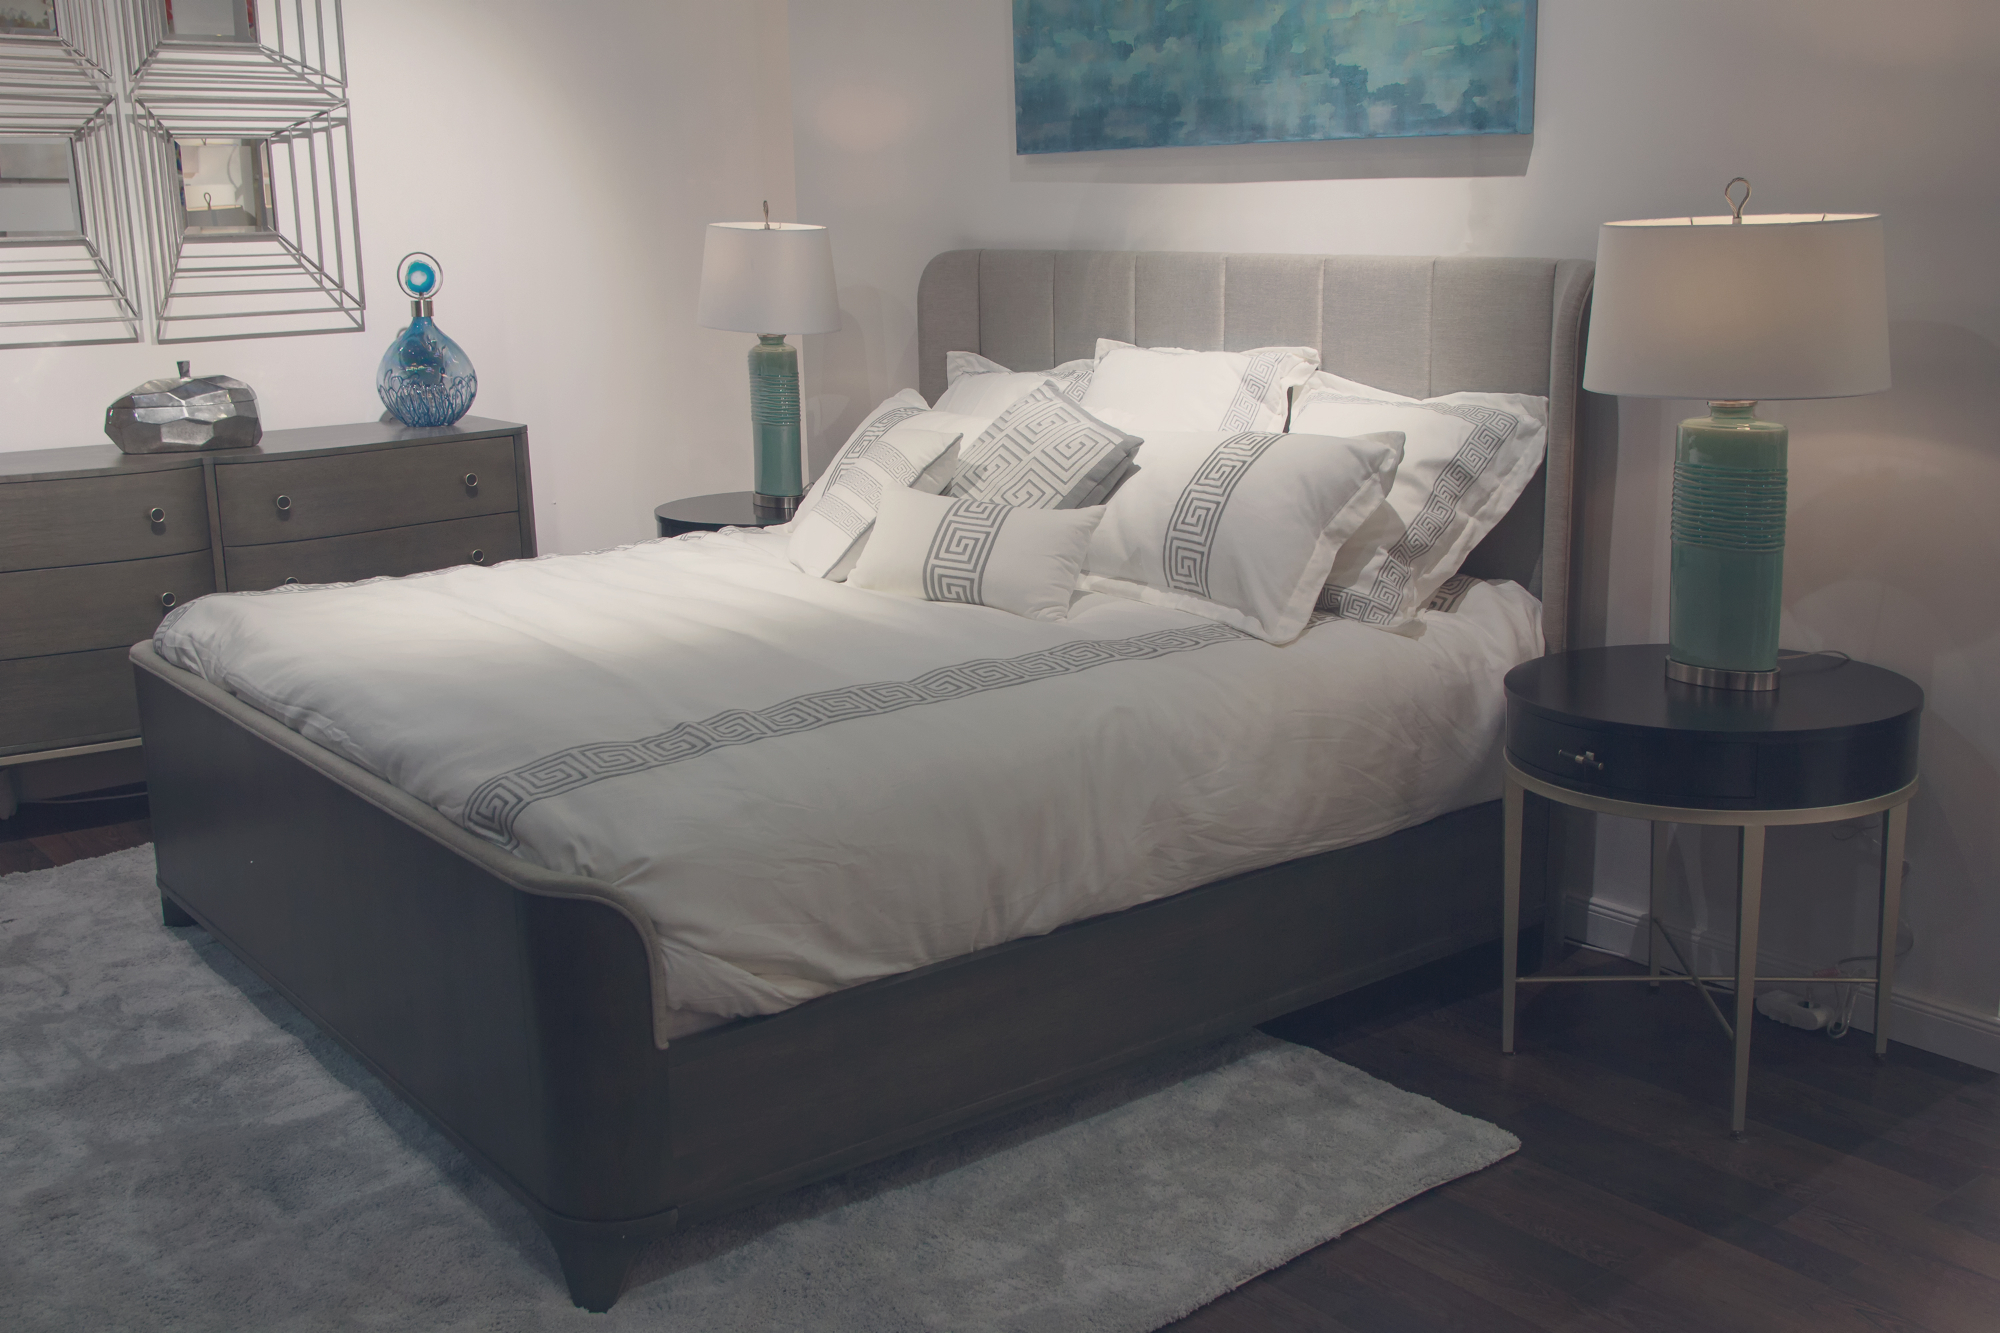 Kvalitetne postelje imajo lahko pozitiven učinek na naš dan